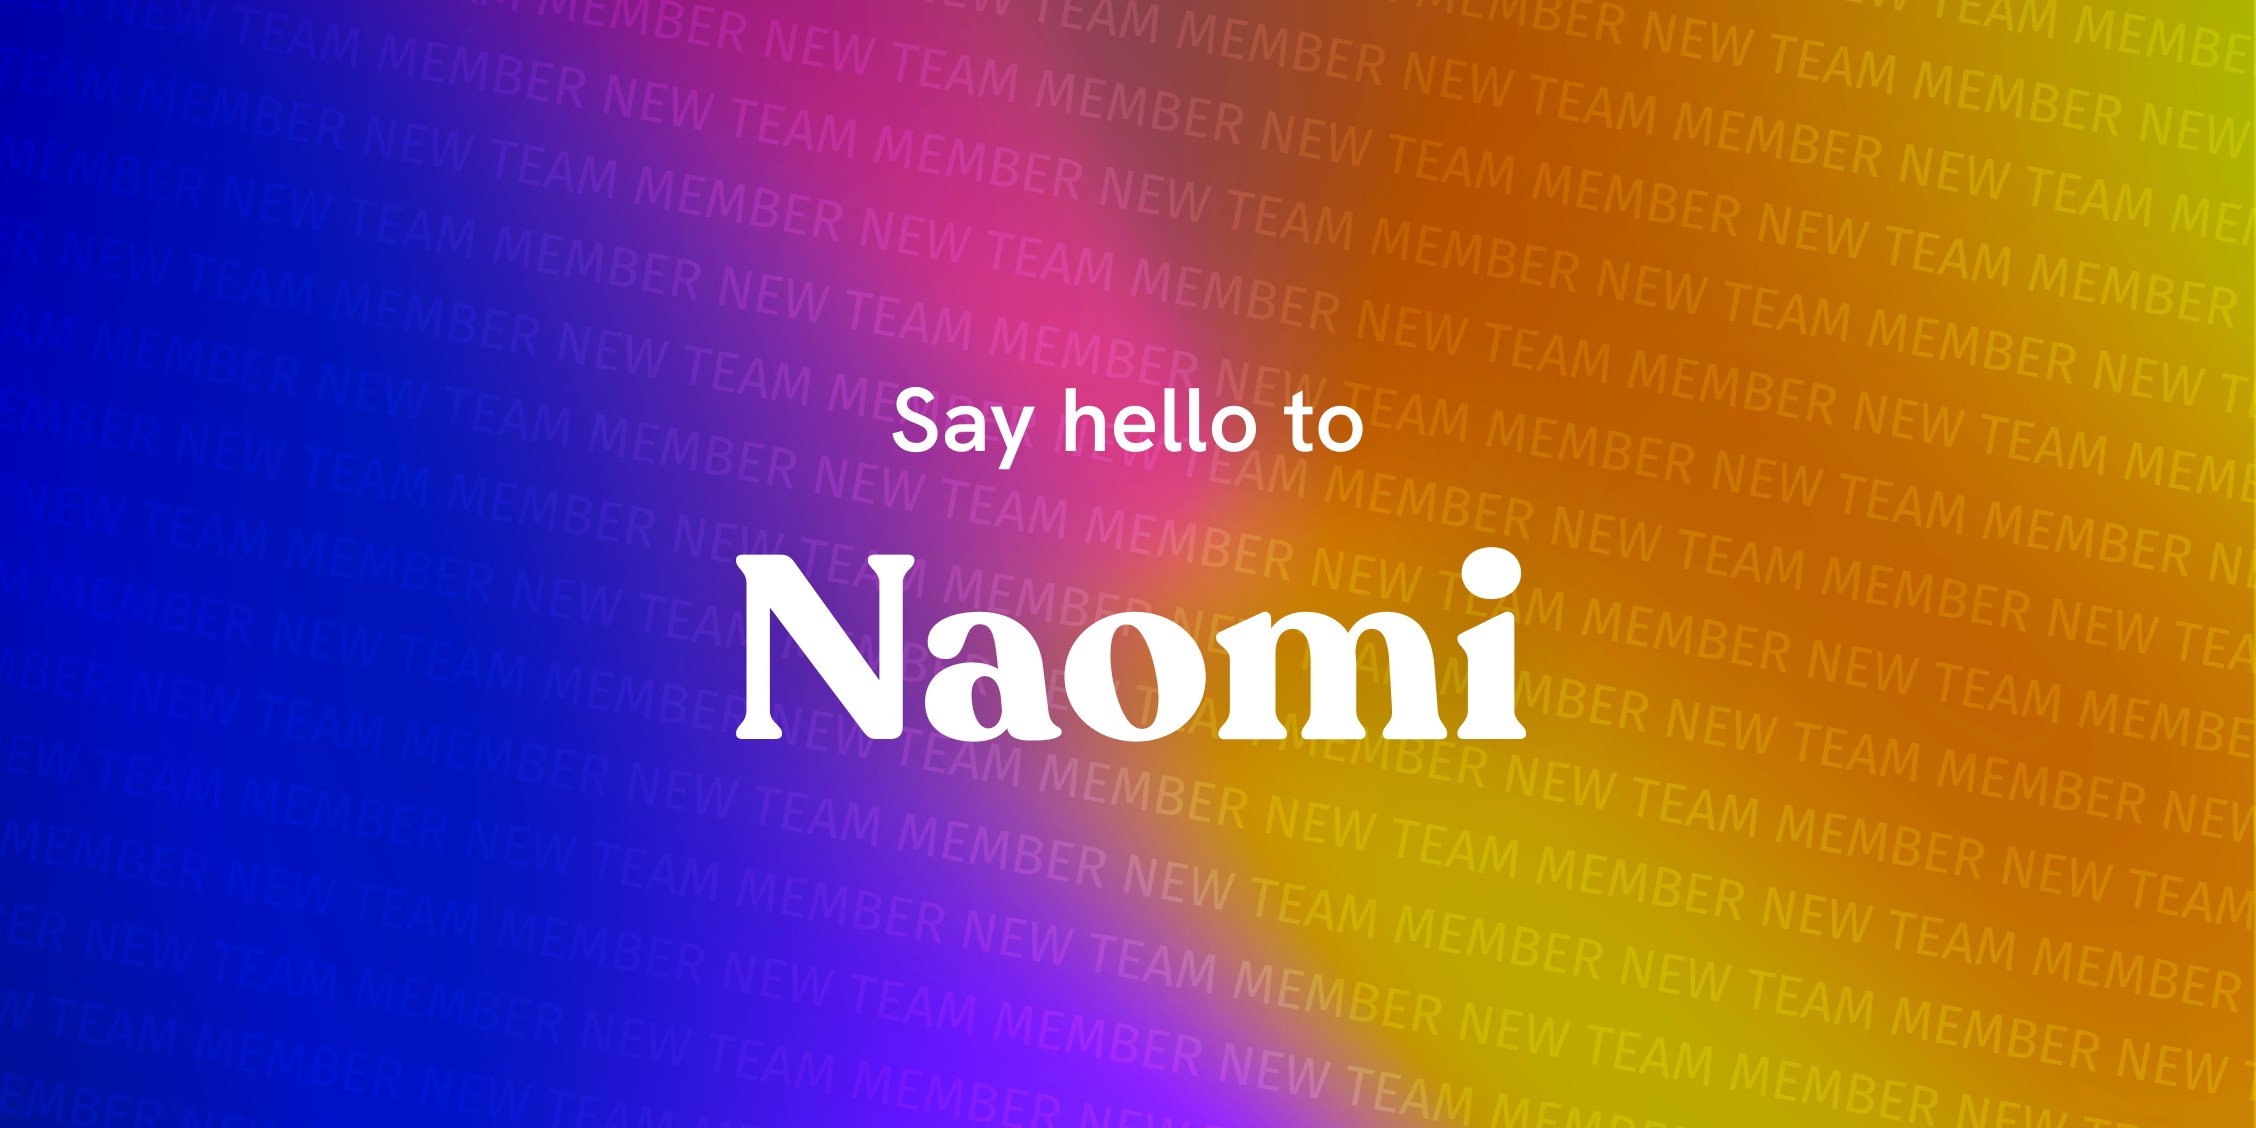 New team member: Naomi